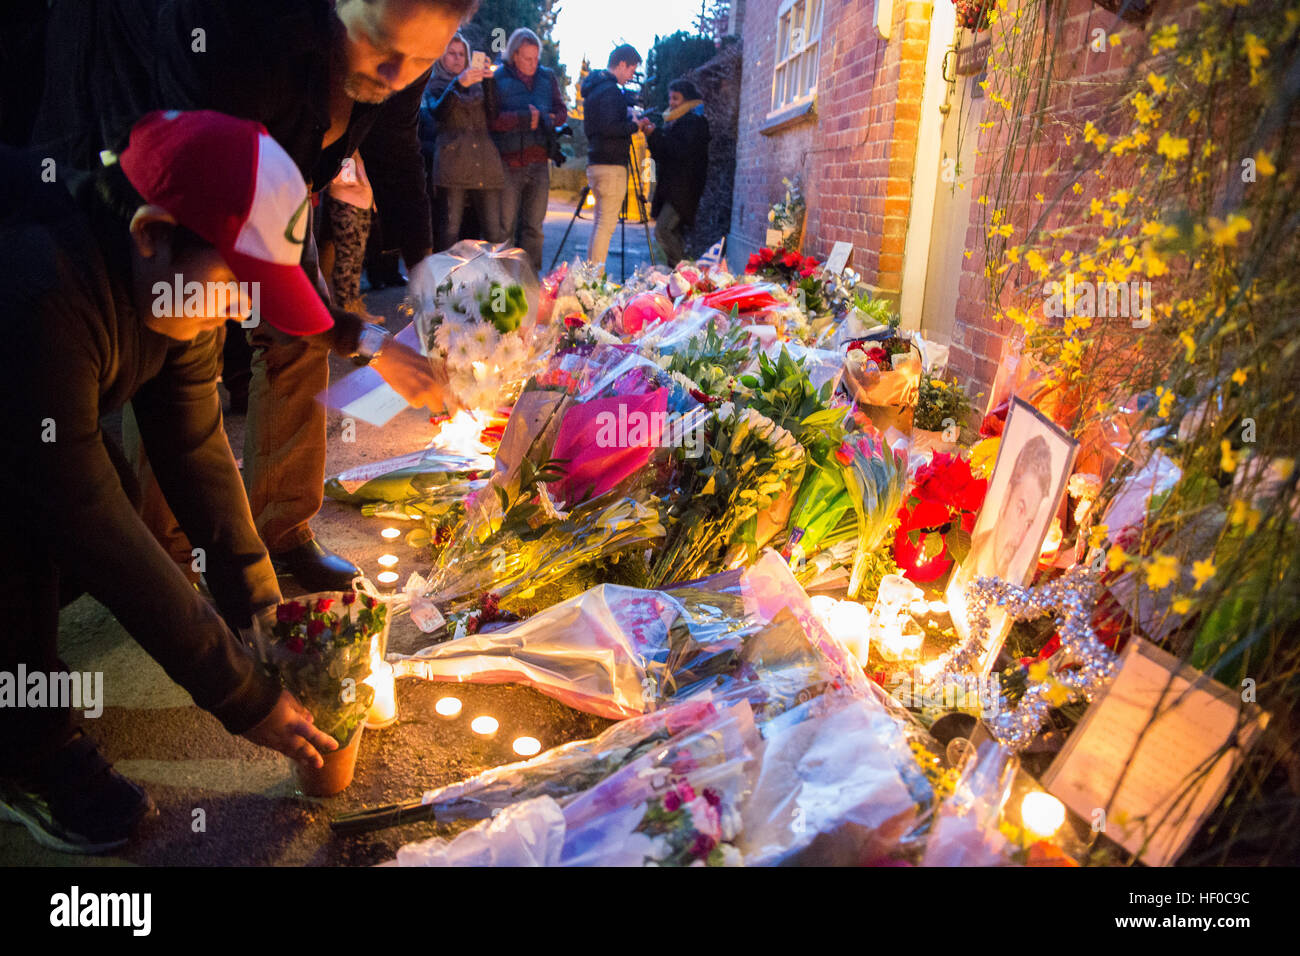 Goring, UK. 26 déc, 21016. Des fleurs, des bougies et des mots de sympathie ont été laissés en dehors de George Michael la maison à Goring. George Michael est décédé hier.© Pete Lusabia/Alamy Live News Banque D'Images